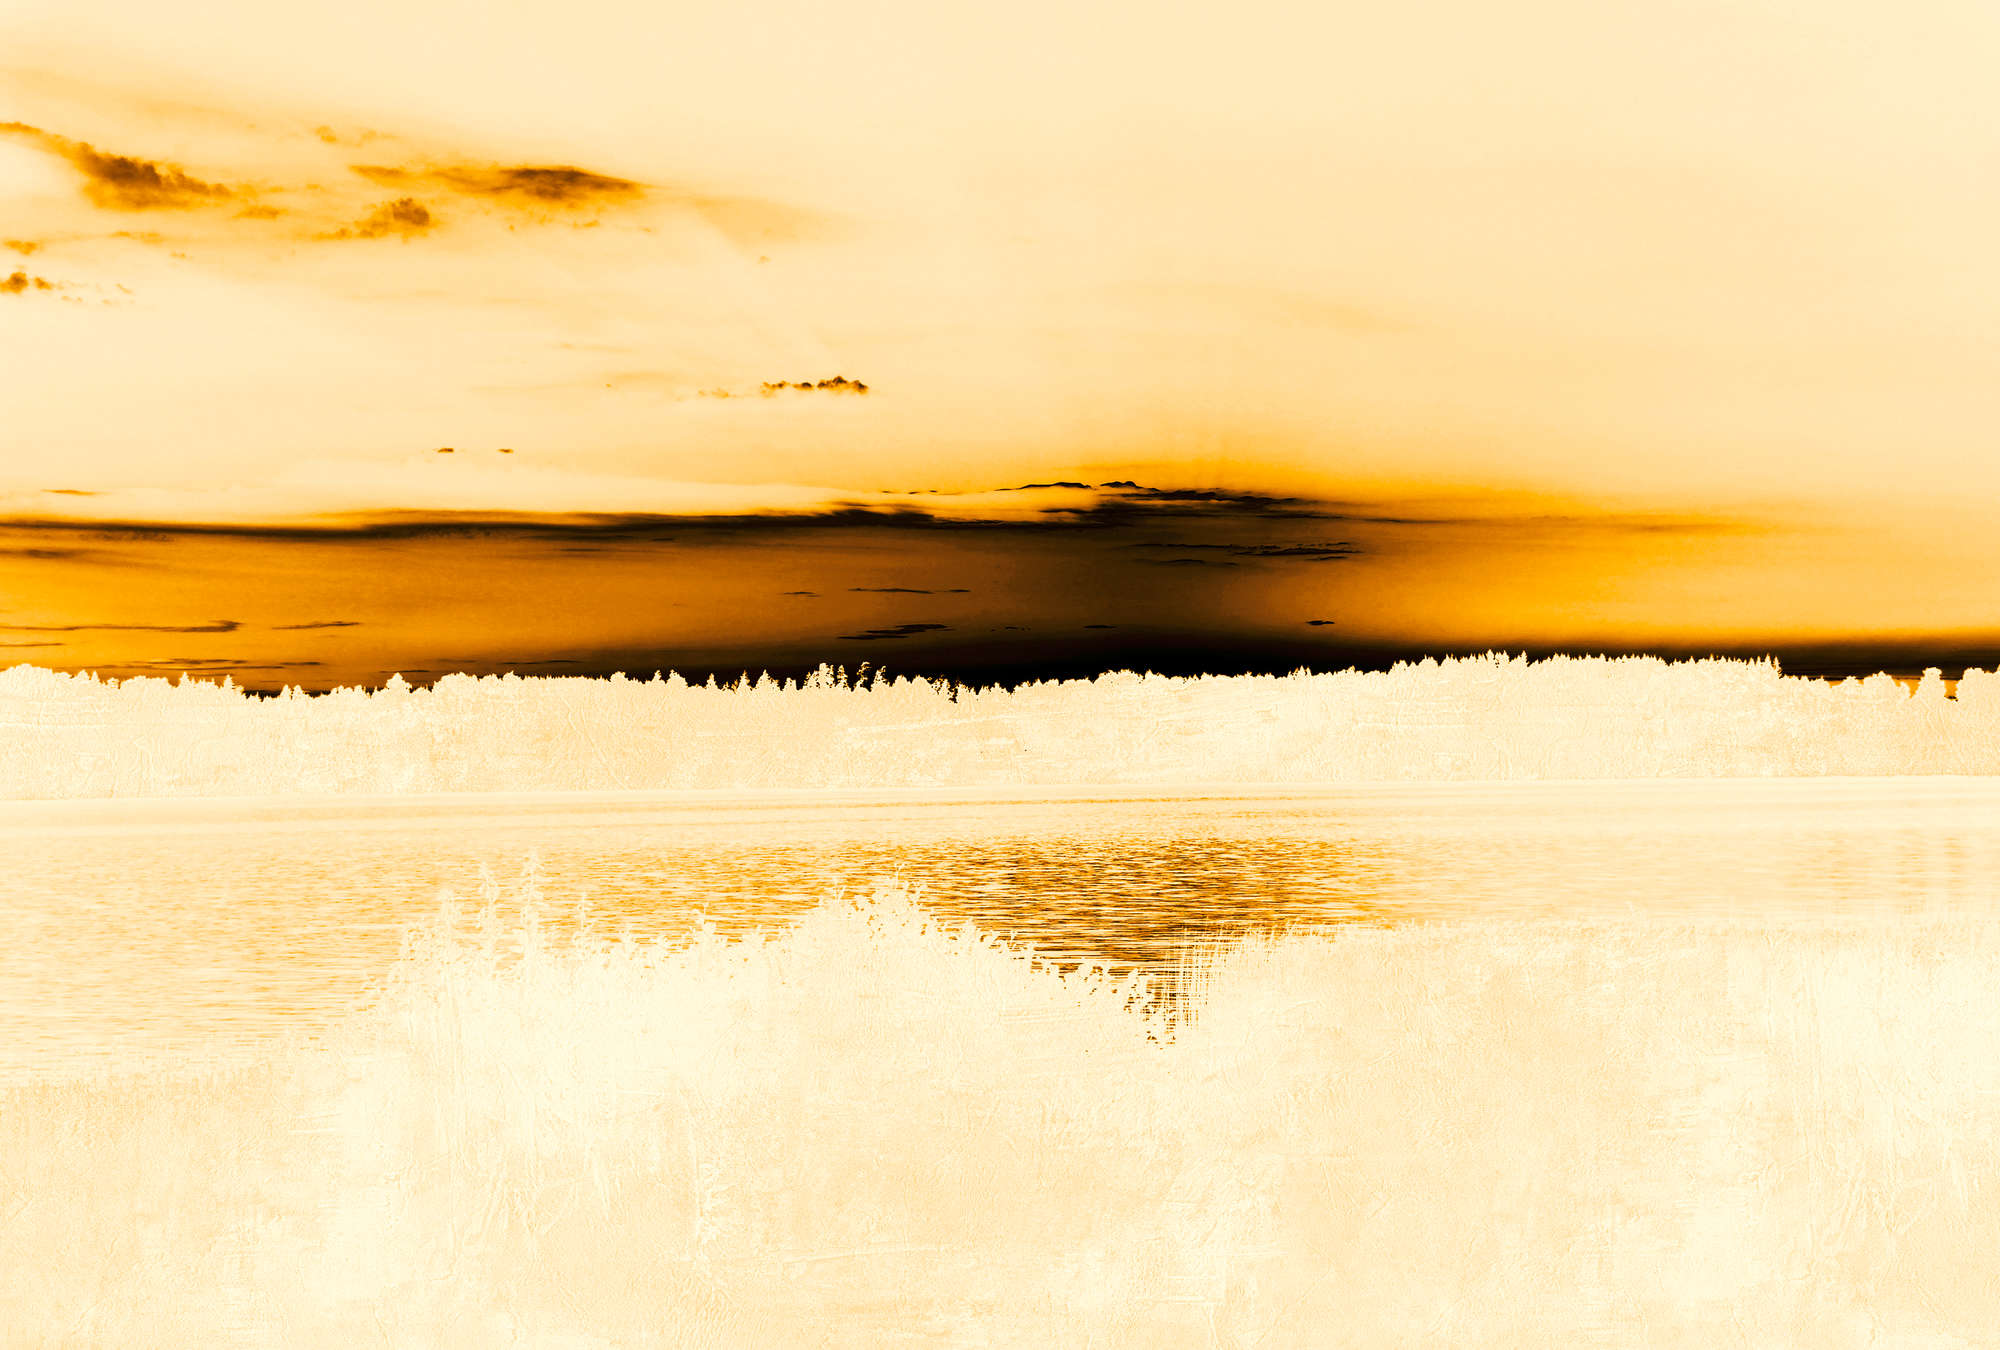             Carta da parati paesaggio vista lago e cielo nuvoloso - Arancione, nero, bianco
        